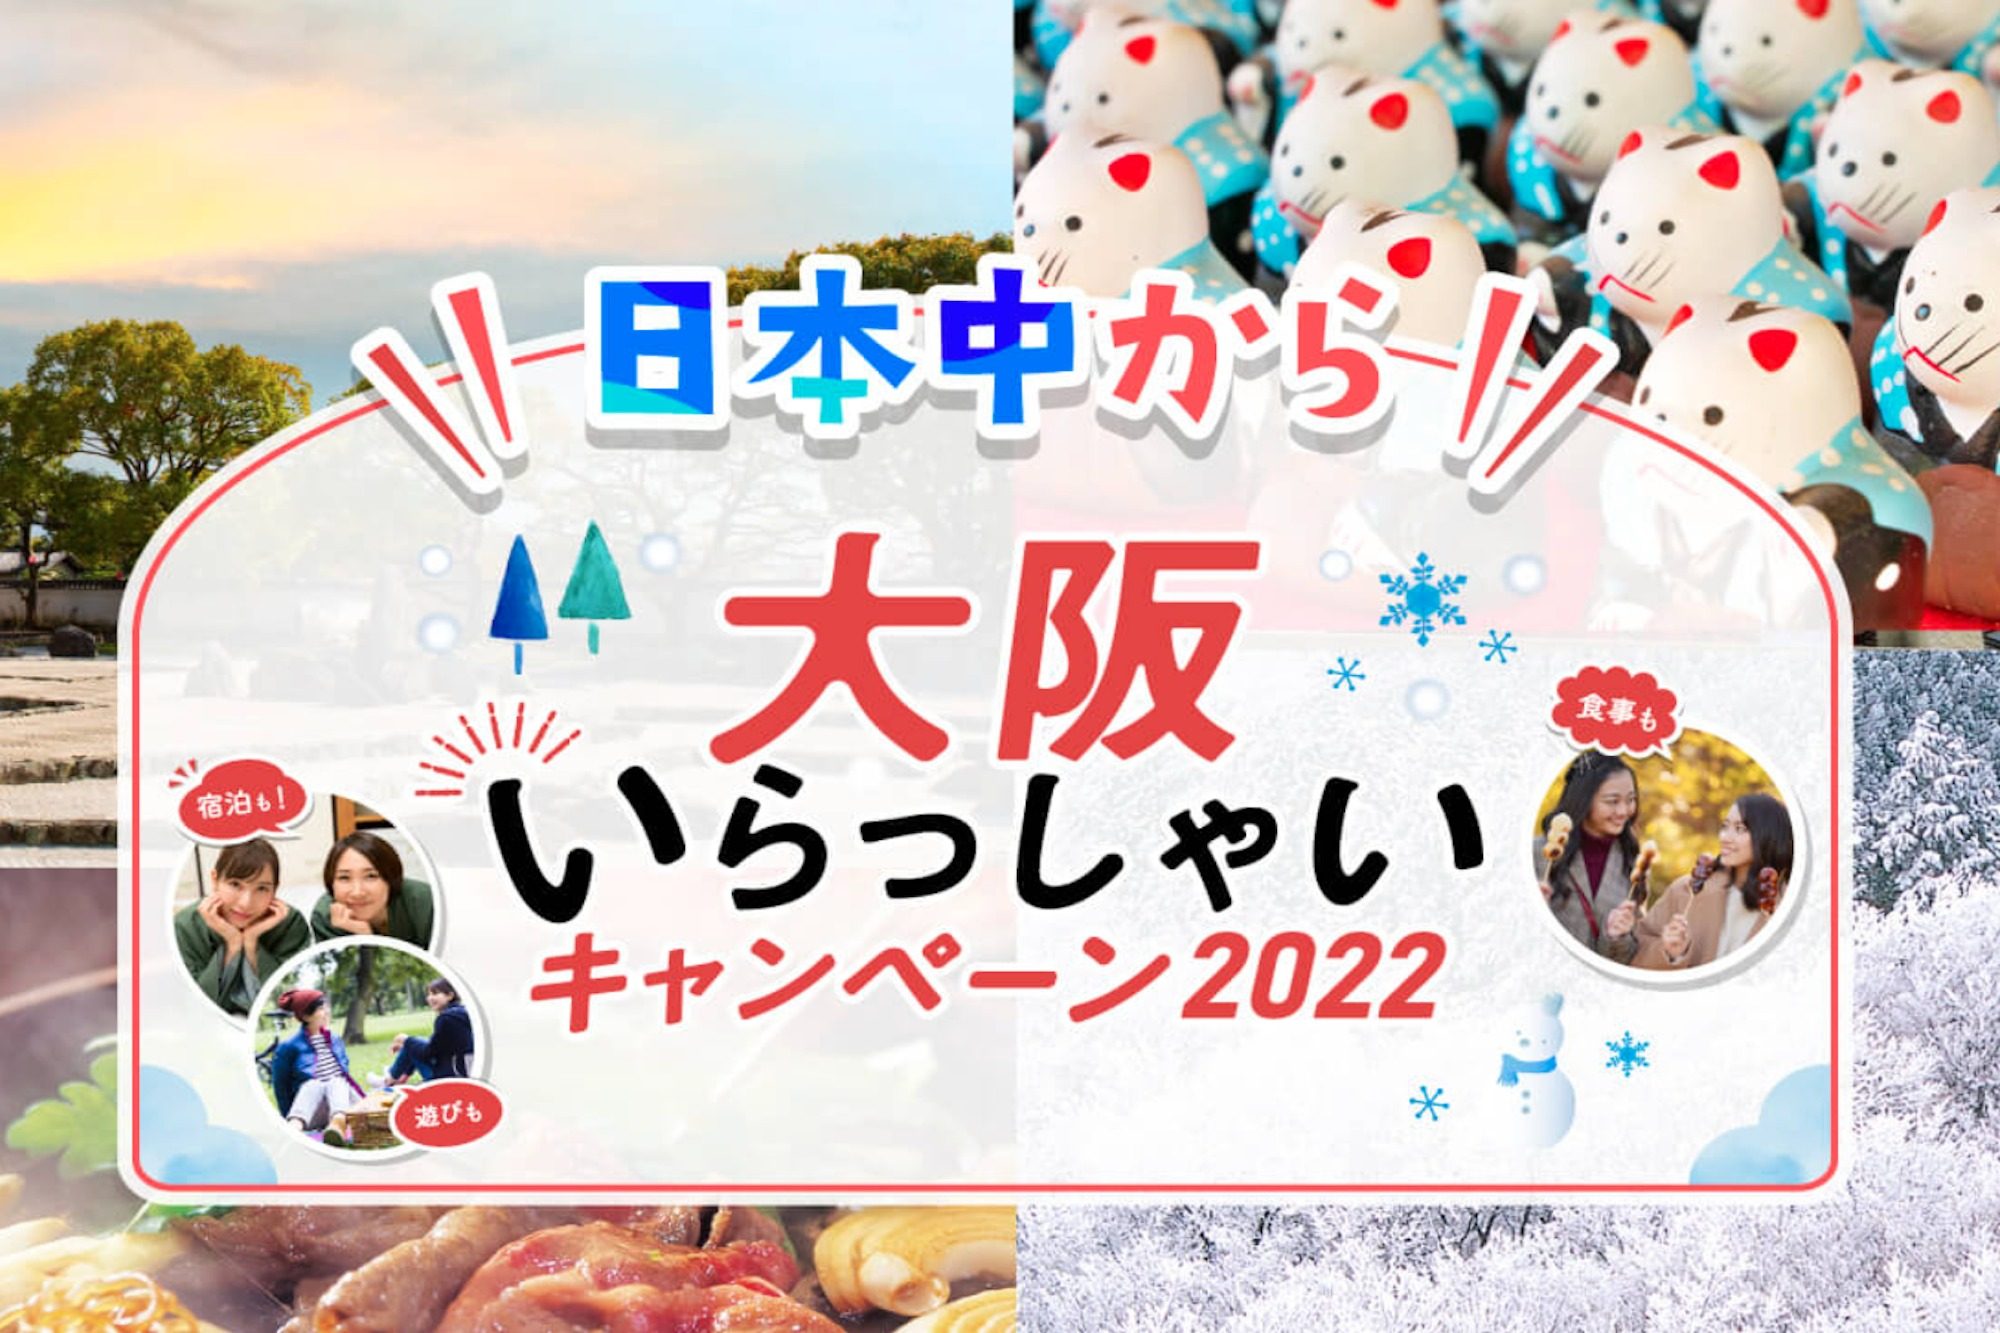 2023.1月 START【日本中から大阪いらっしゃいキャンペーン!!】